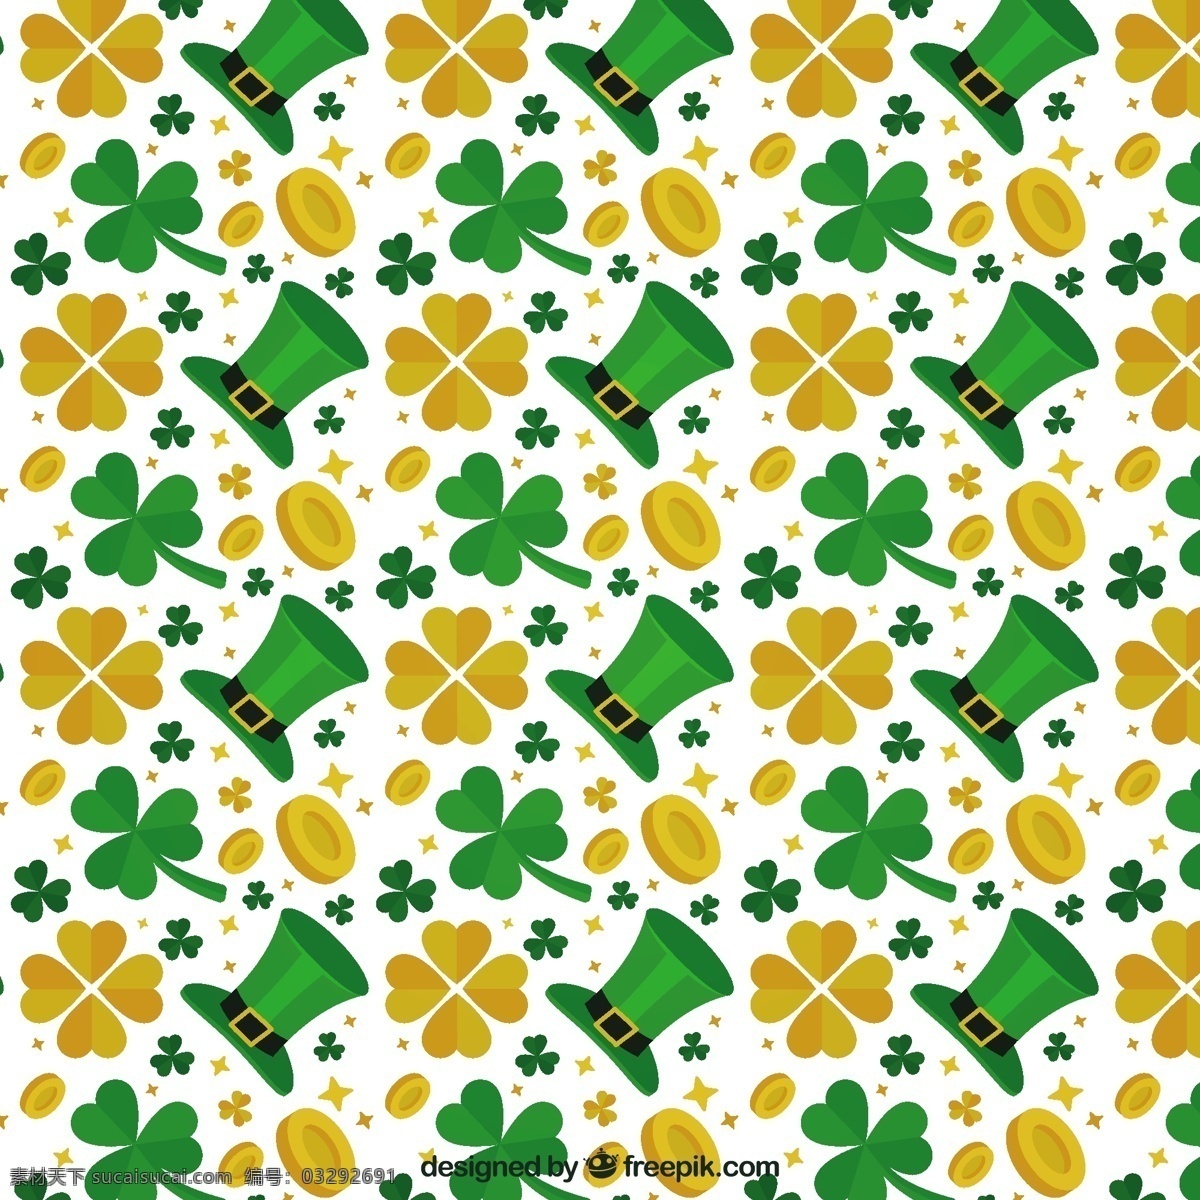 绿色 帽子 金色 三叶草 图案 背景图案 聚会 啤酒 绿色的春天 绿色的背景 庆典 节日 黄金 背景 春天的背景 无缝模式 文化背景 无缝 凯尔特人 爱尔兰人 白色